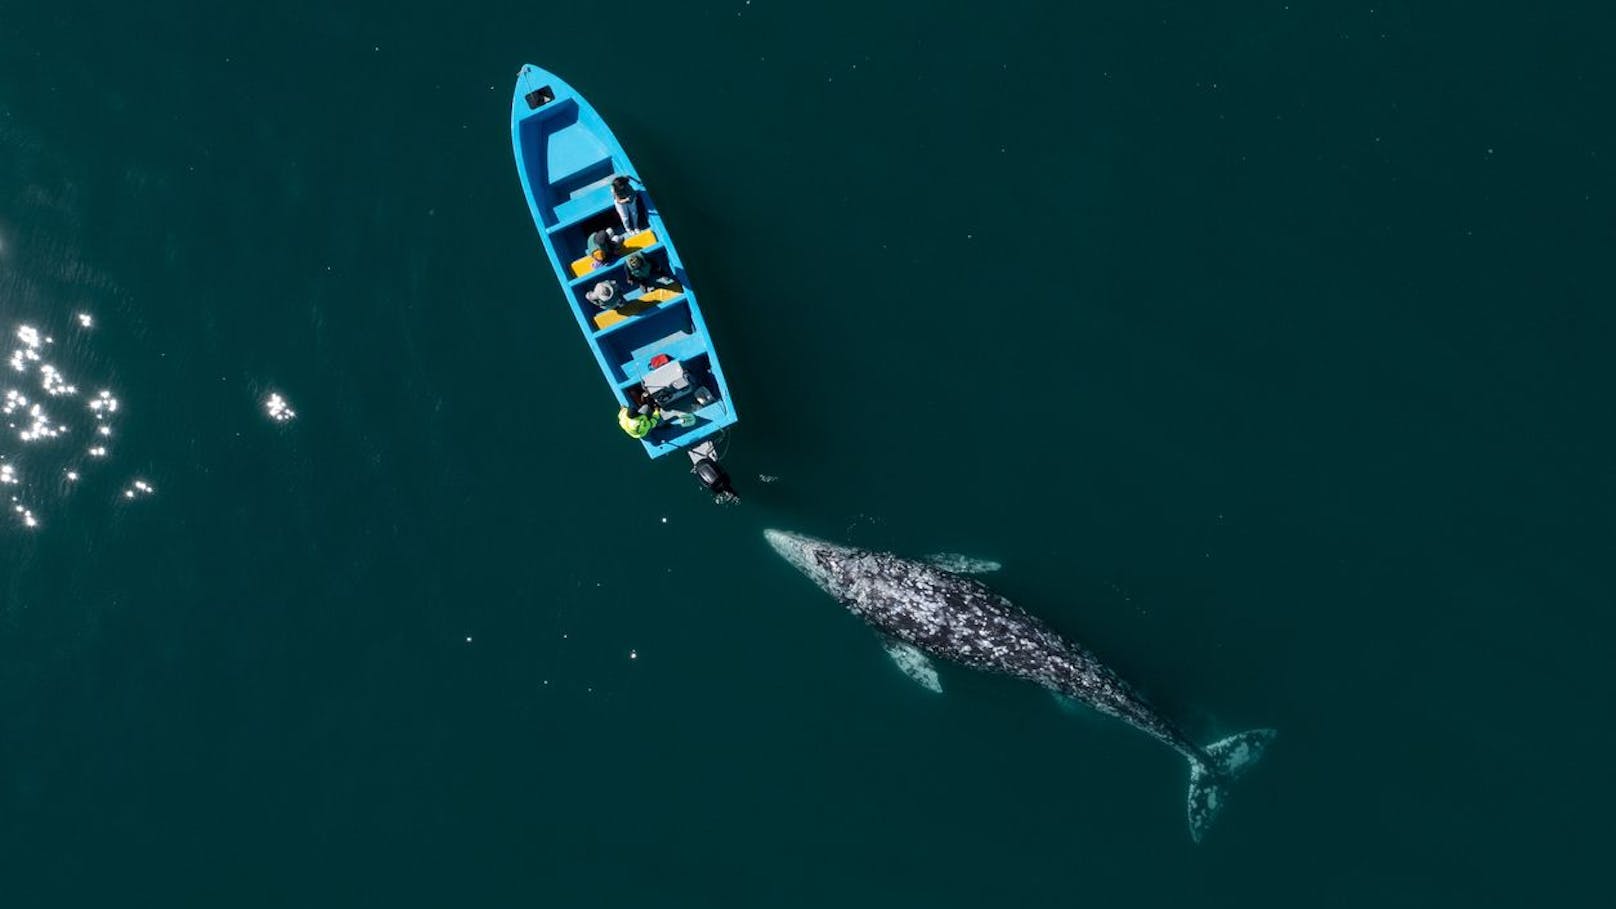 Walfänger nennen den Grauwal manchmal "Teufelsfisch", da die Grauwal-Weibchen ihre Kälber ziemlich aggressiv verteidigen können. Recht haben sie.